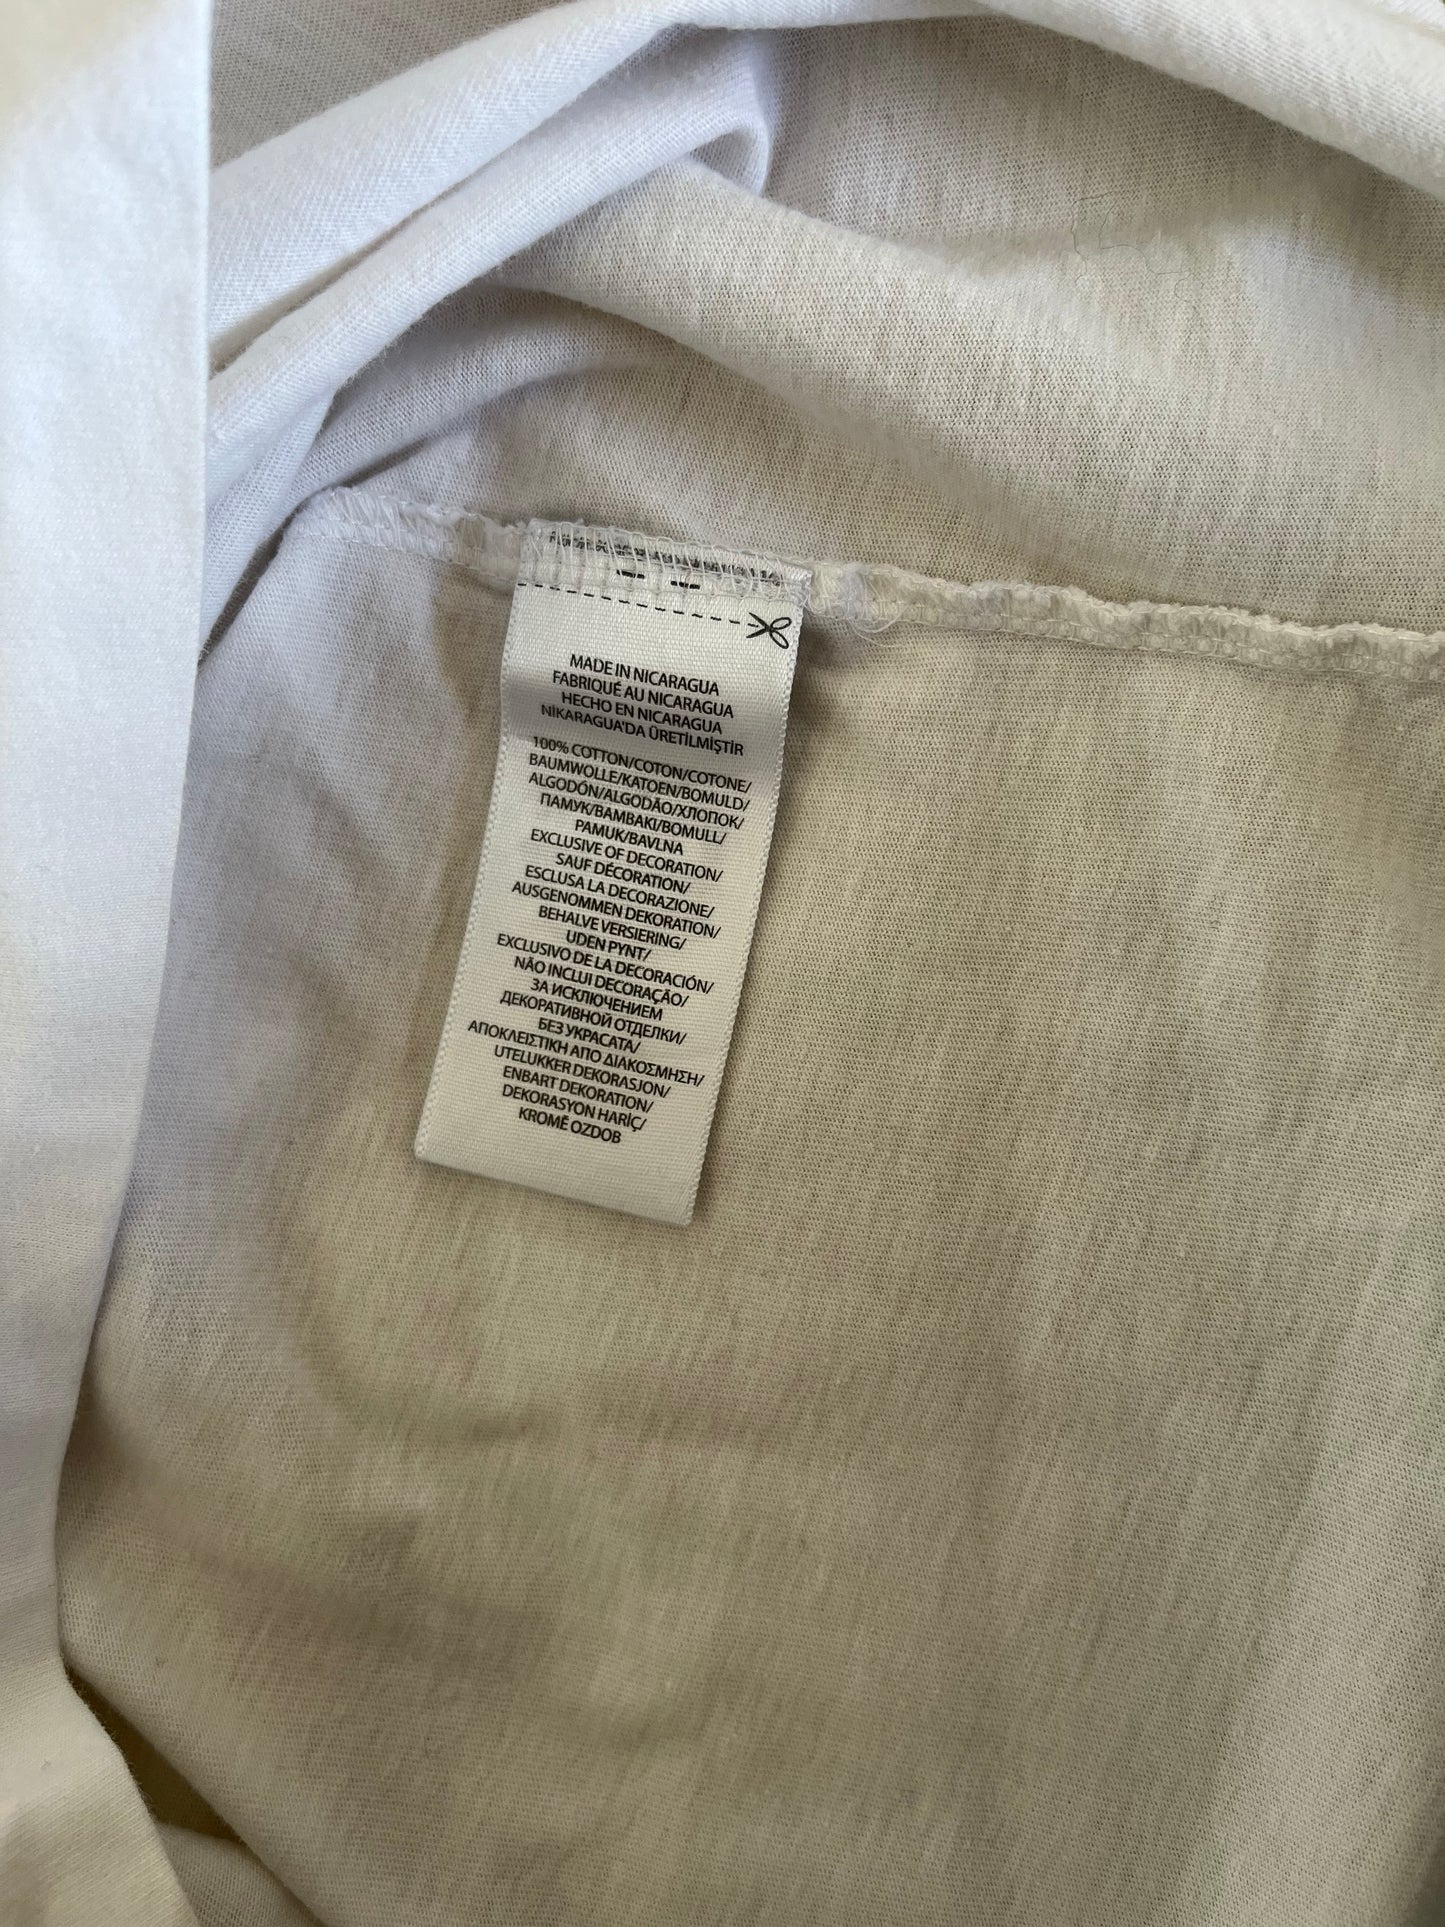 T-Shirt Ralph Lauren bianca taglia M